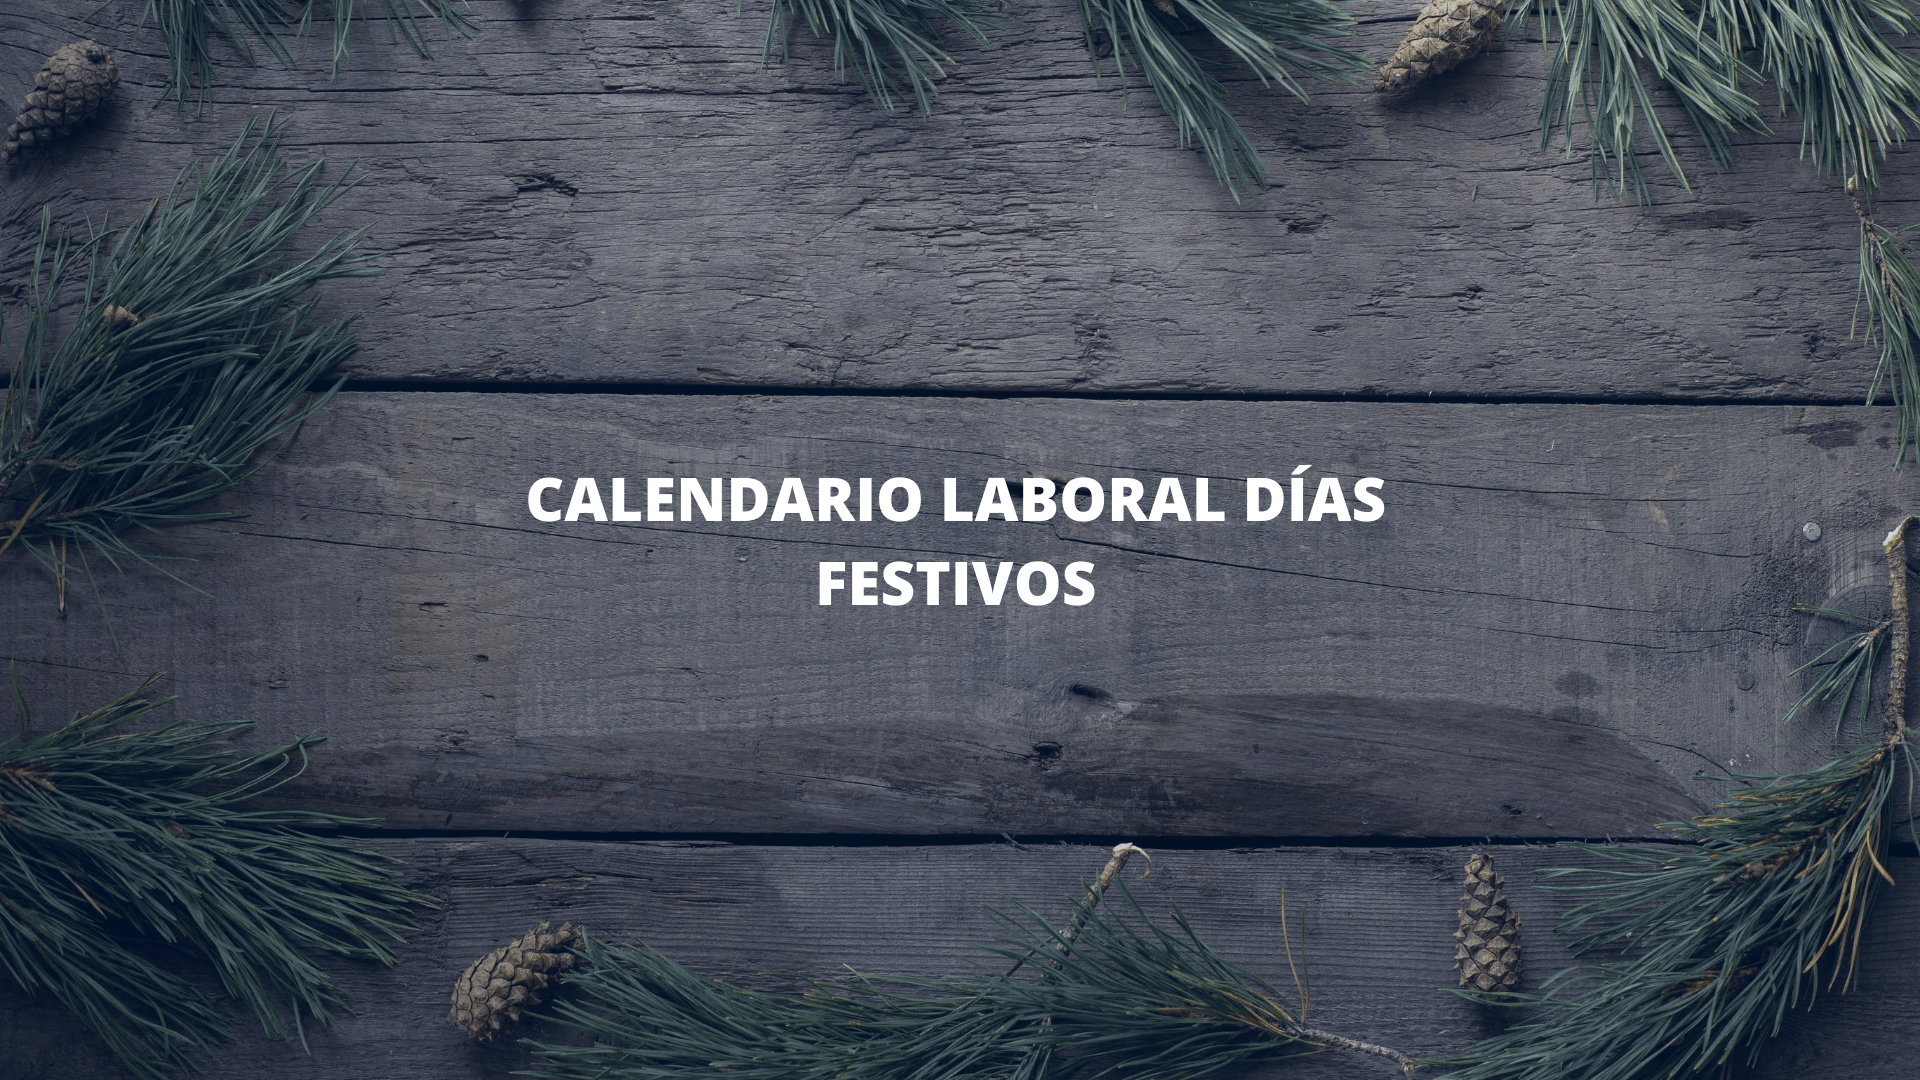 Calendario laboral días festivos